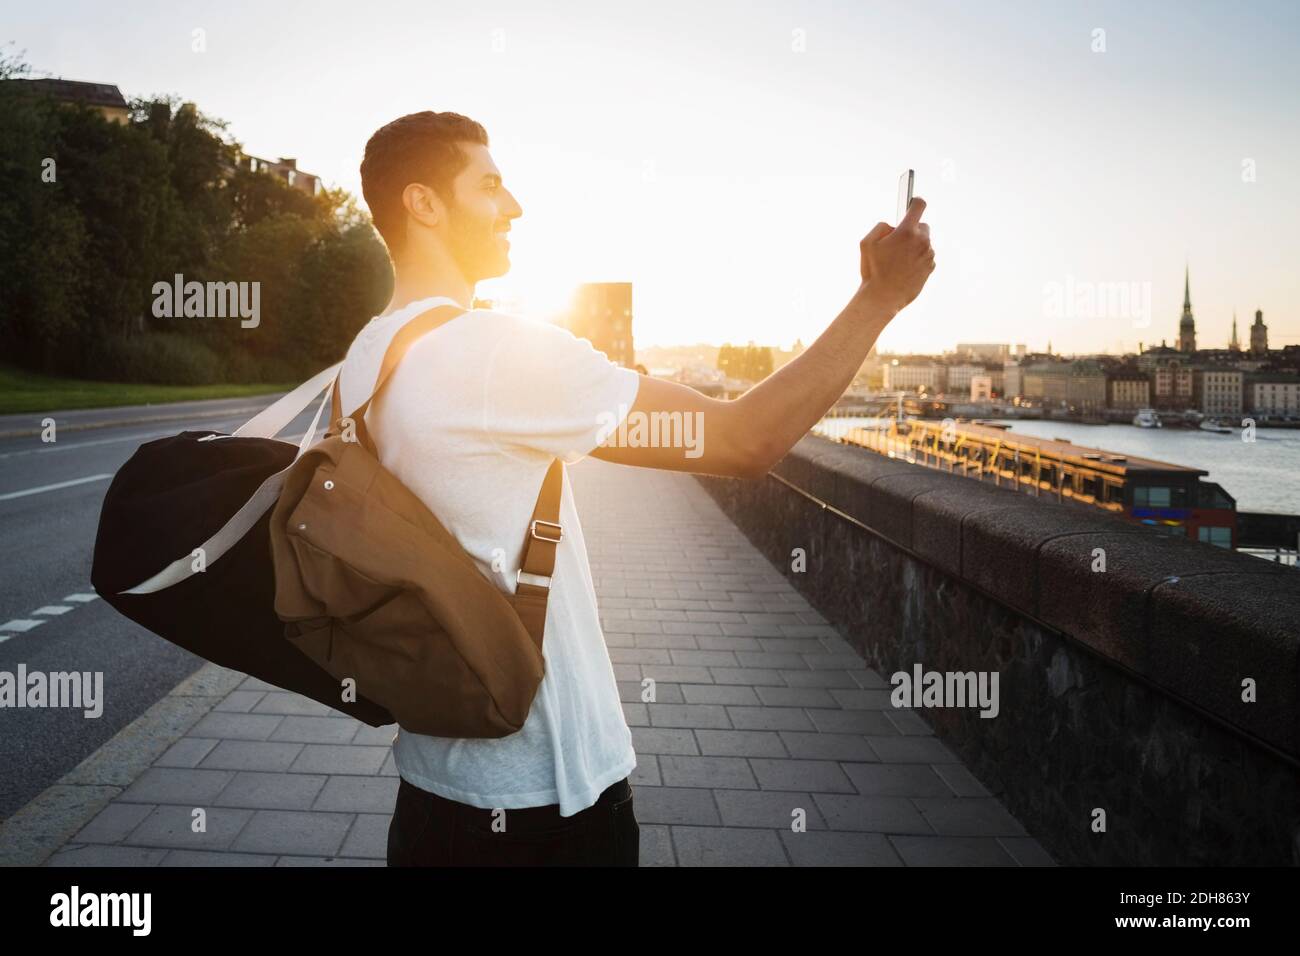 Vue latérale d'un touriste en train de photographier un smartphone debout sur le pont Banque D'Images